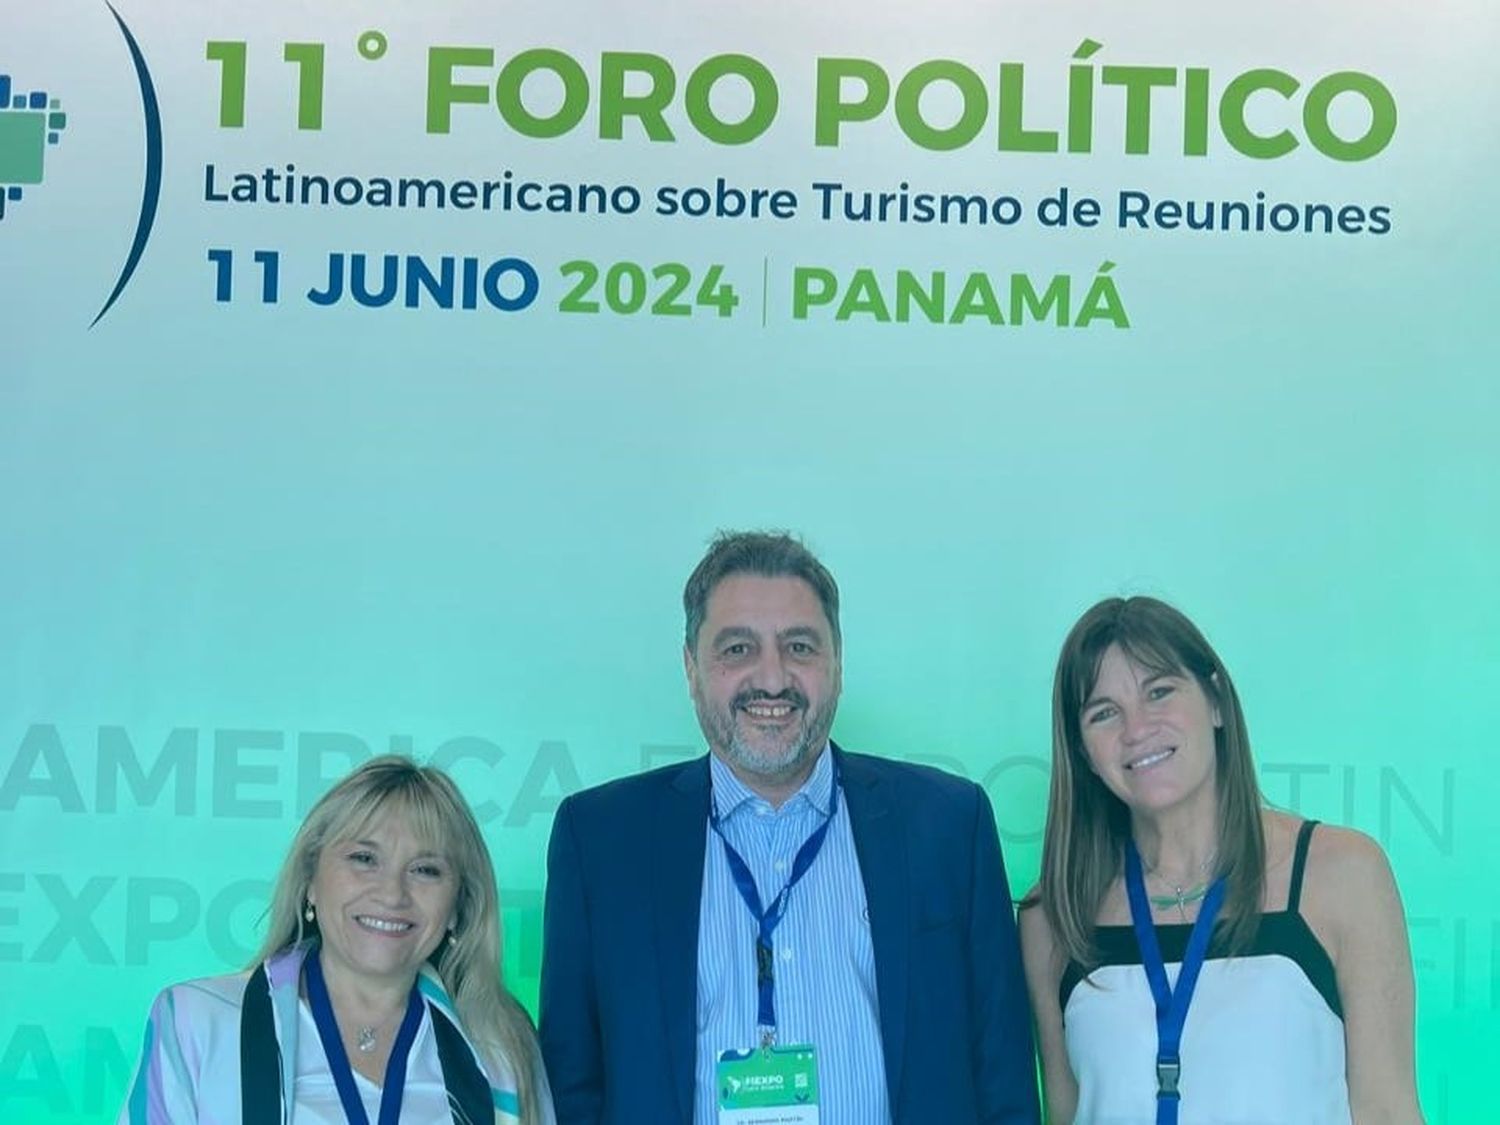 MDP Bureau participó de: 
El 11º Foro Político Latinoamericano,